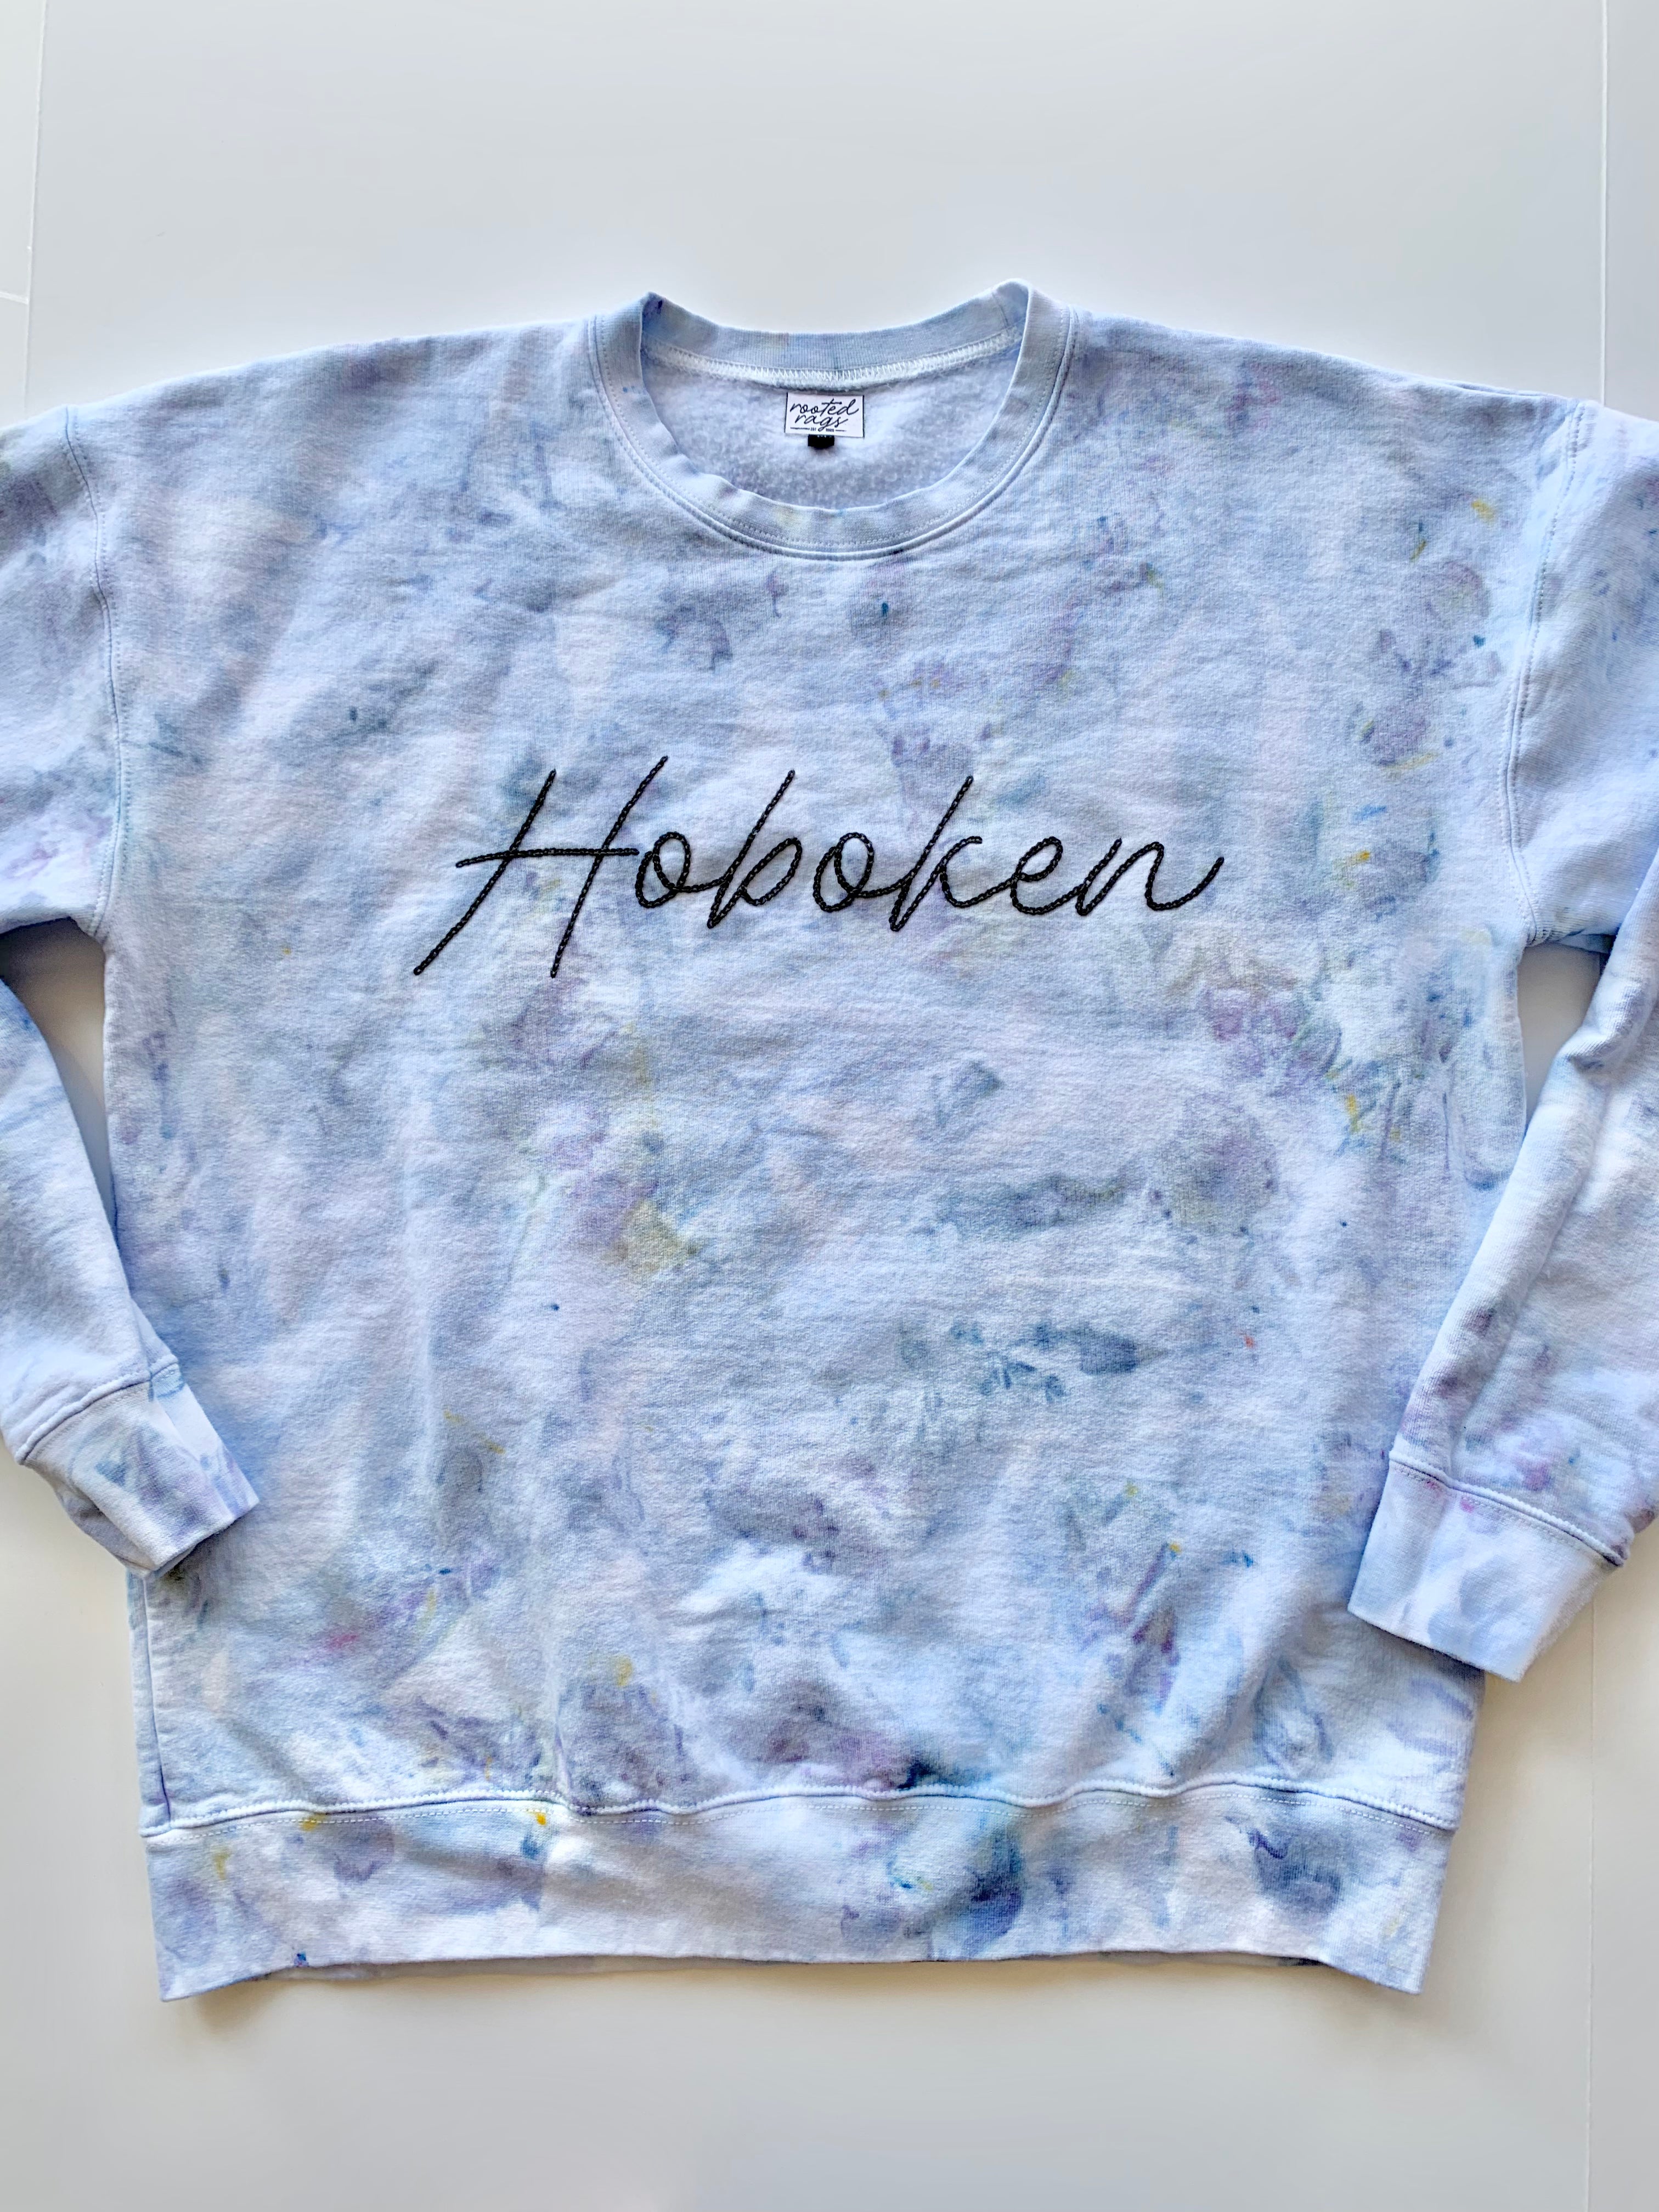 Hoboken Hand Embroidered and Ice Dyed Adult Unisex Sweatshirt